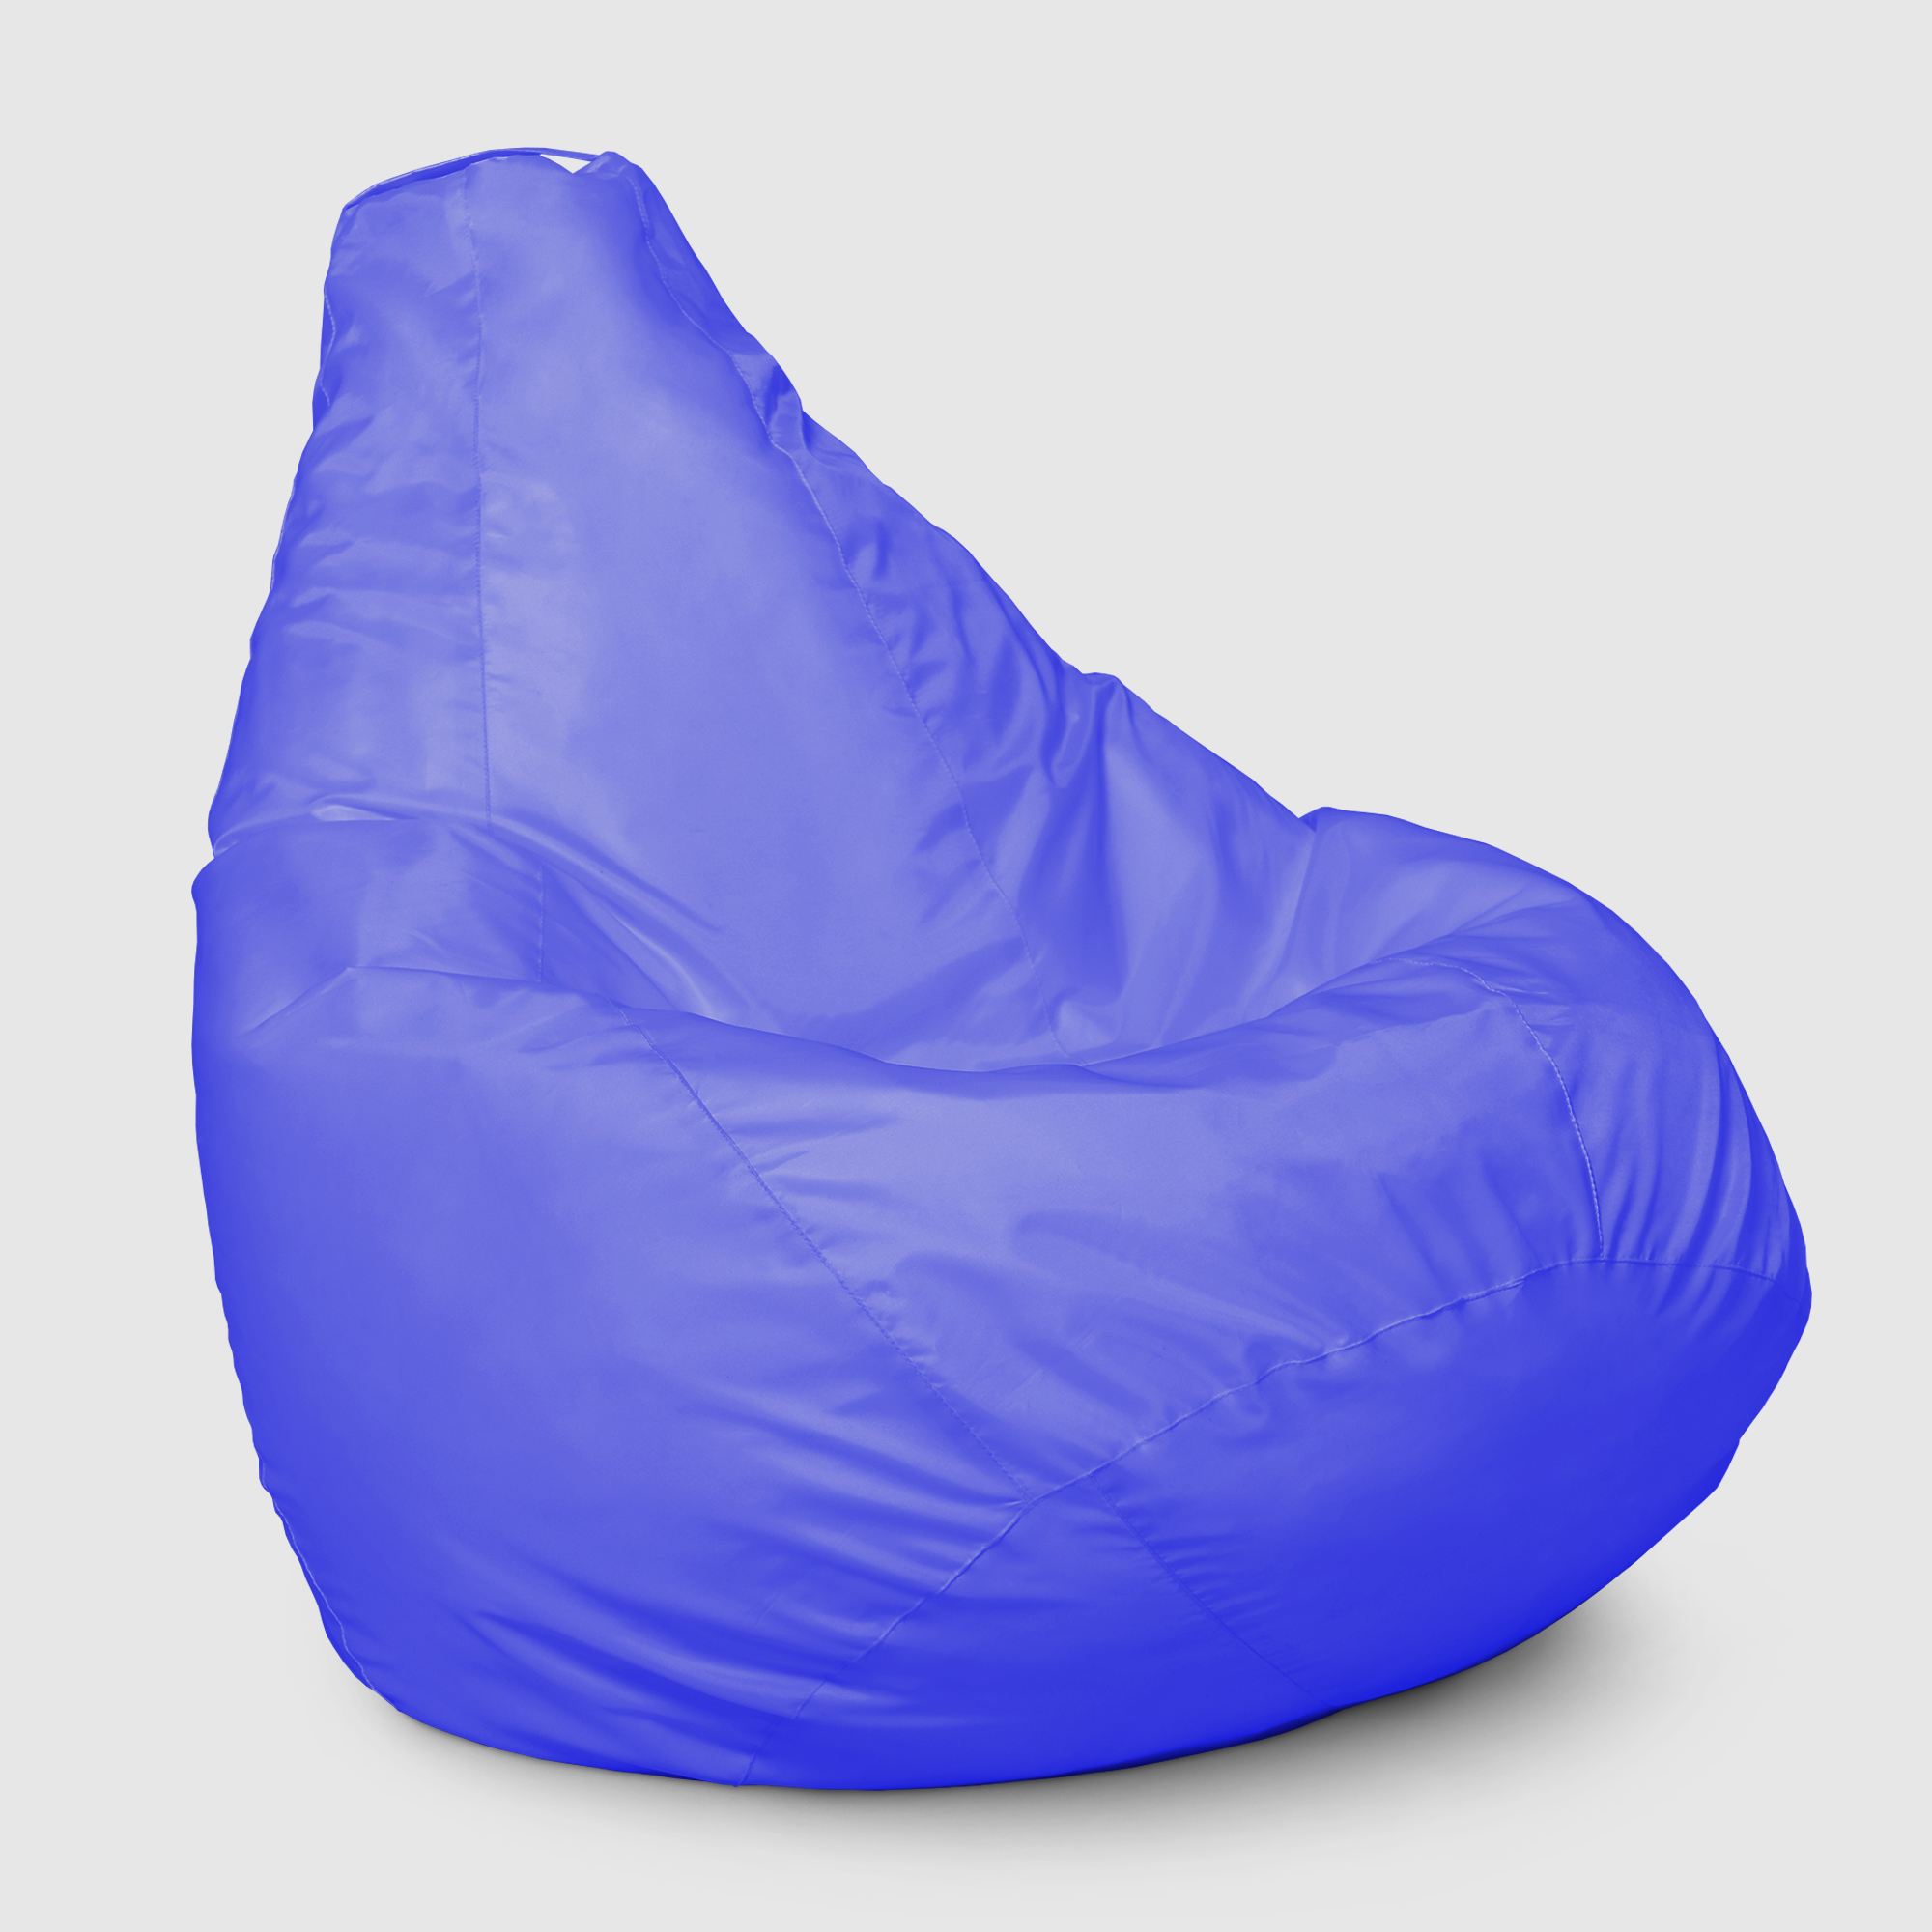 Кресло мешок Dreambag Меган xl Синее 85х85х125 см кресло мешок dreambag меган xl зеленое 85х85х125см